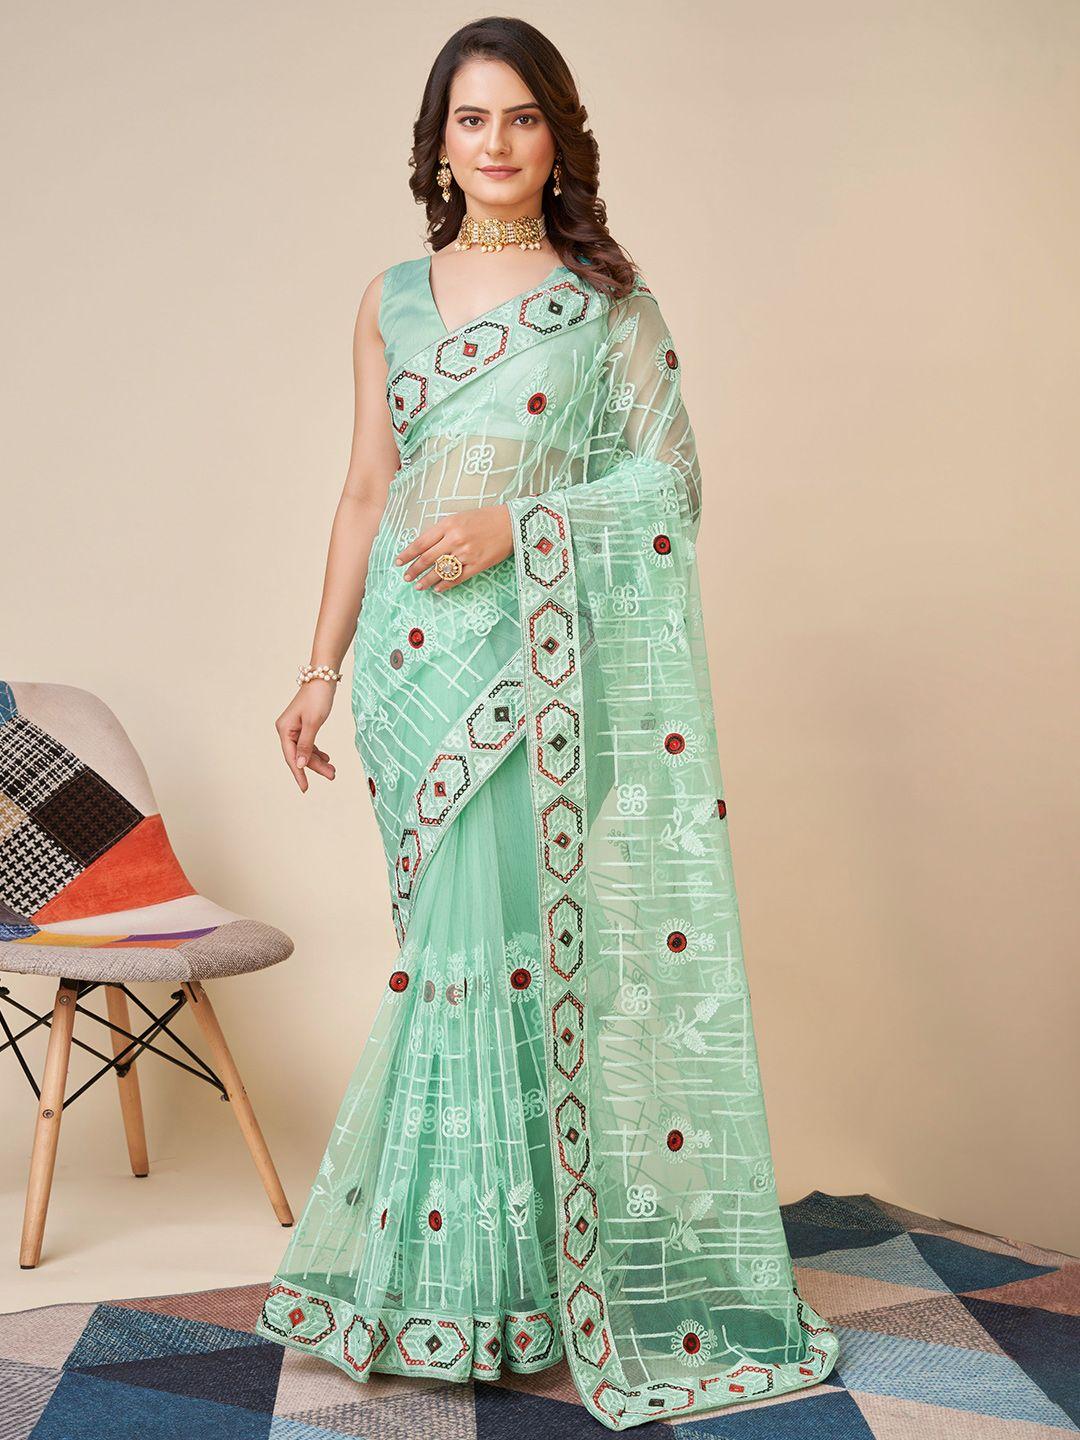 vairagee ethnic motifs embroidered net saree